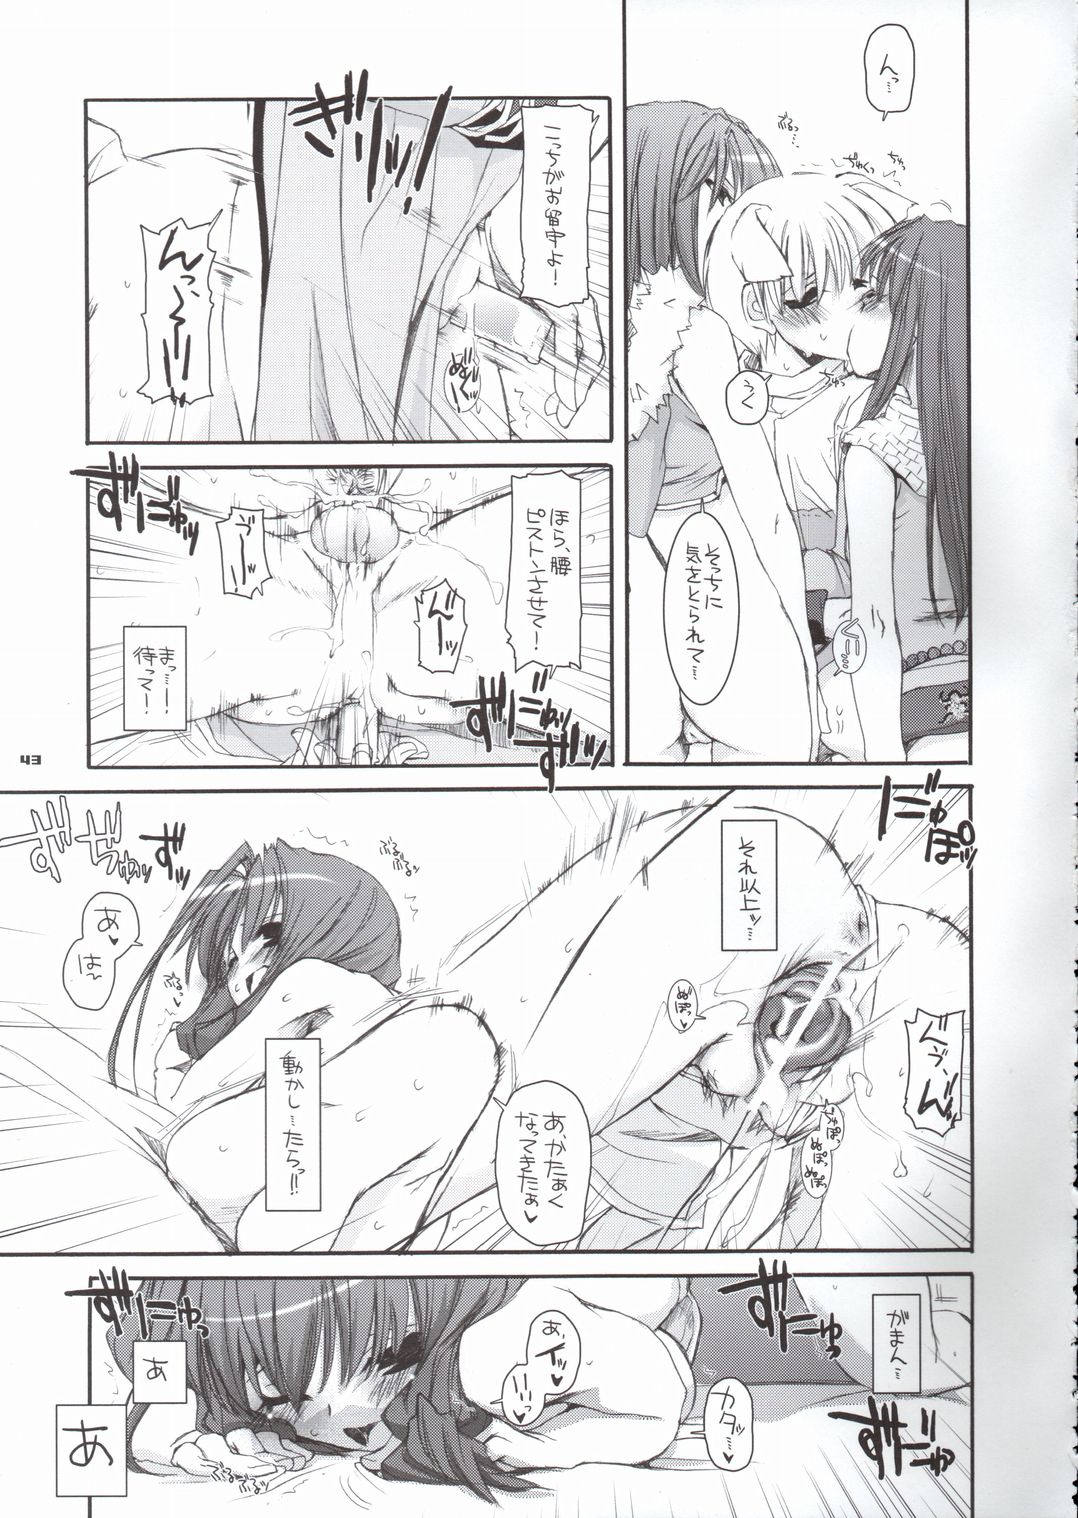 (CR37) [Digital Lover (Nakajima Yuka)] D.L. Action 29 (Ragnarok Online) page 42 full